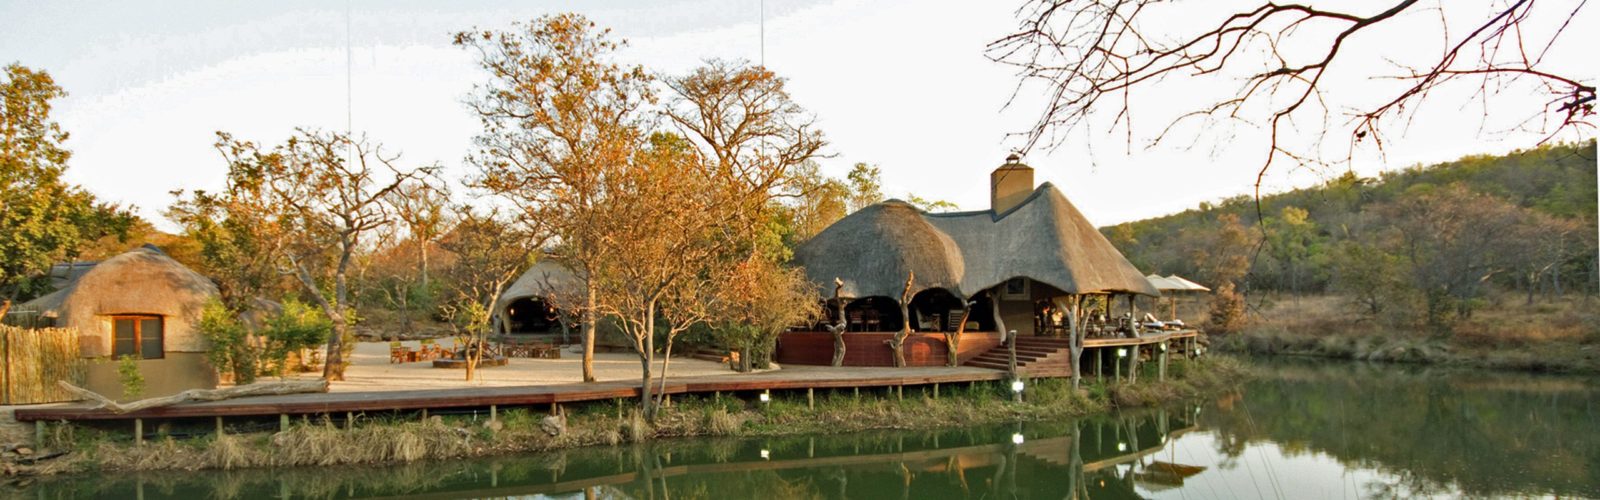 Zulu Camp, Shambala, Limpopo Province, South Africa